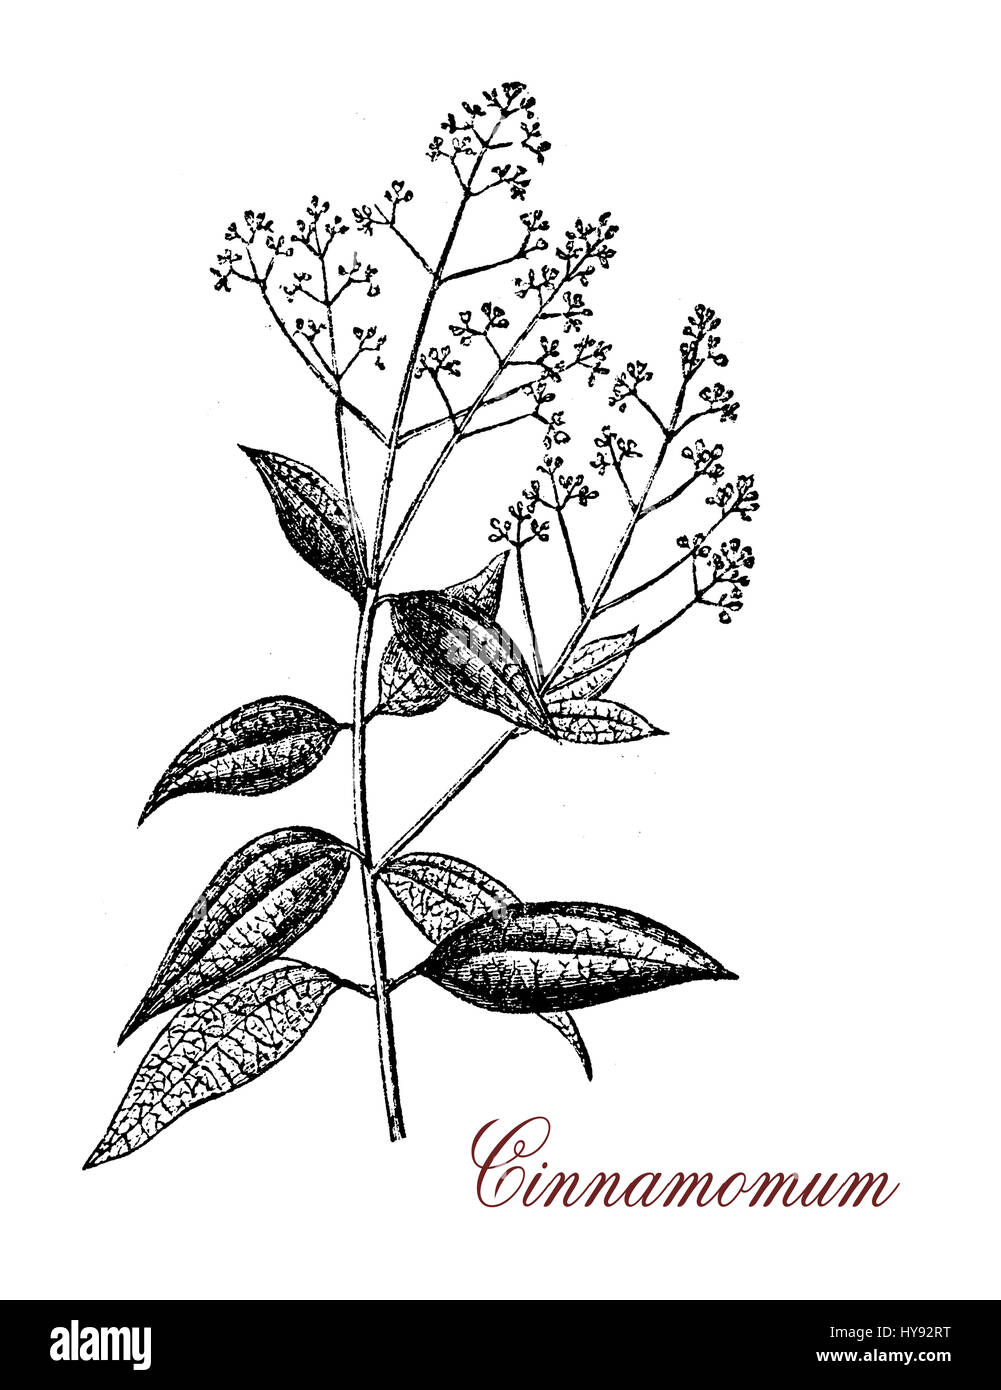 Vintage Gravur Cinnamomum, einer aromatischen immergrüner Baum oder Strauch mit glänzenden Blättern. Ein Gewürz (Zimt) ergibt sich aus der inneren Rinde in süßen und herzhaften Speisen verwendet Stockfoto